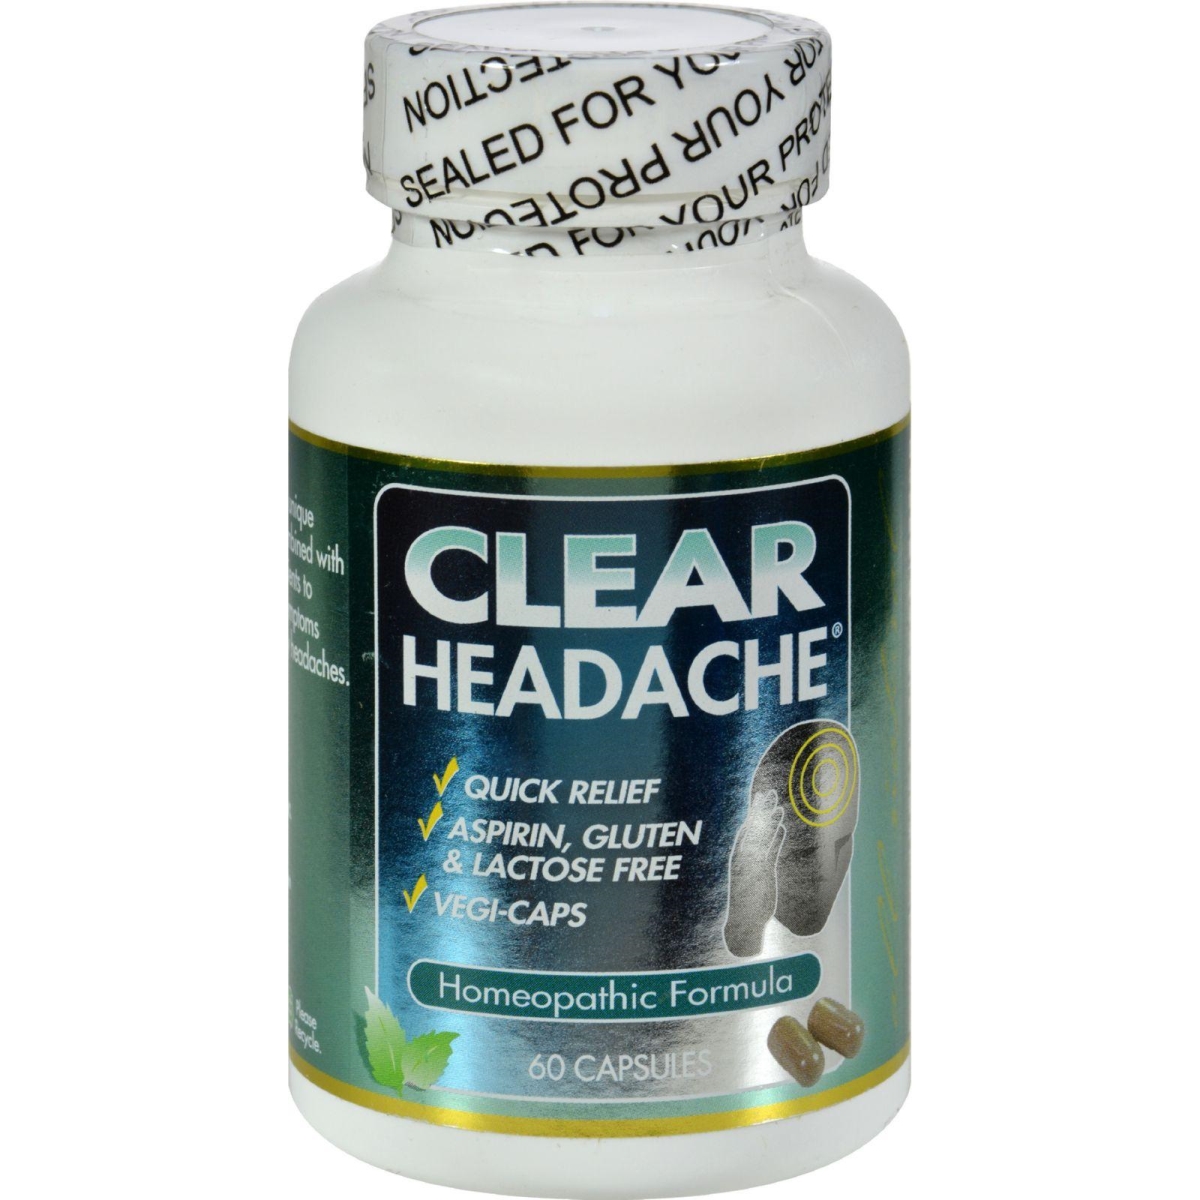 Hg0408831 Clear Headache - 60 Capsules